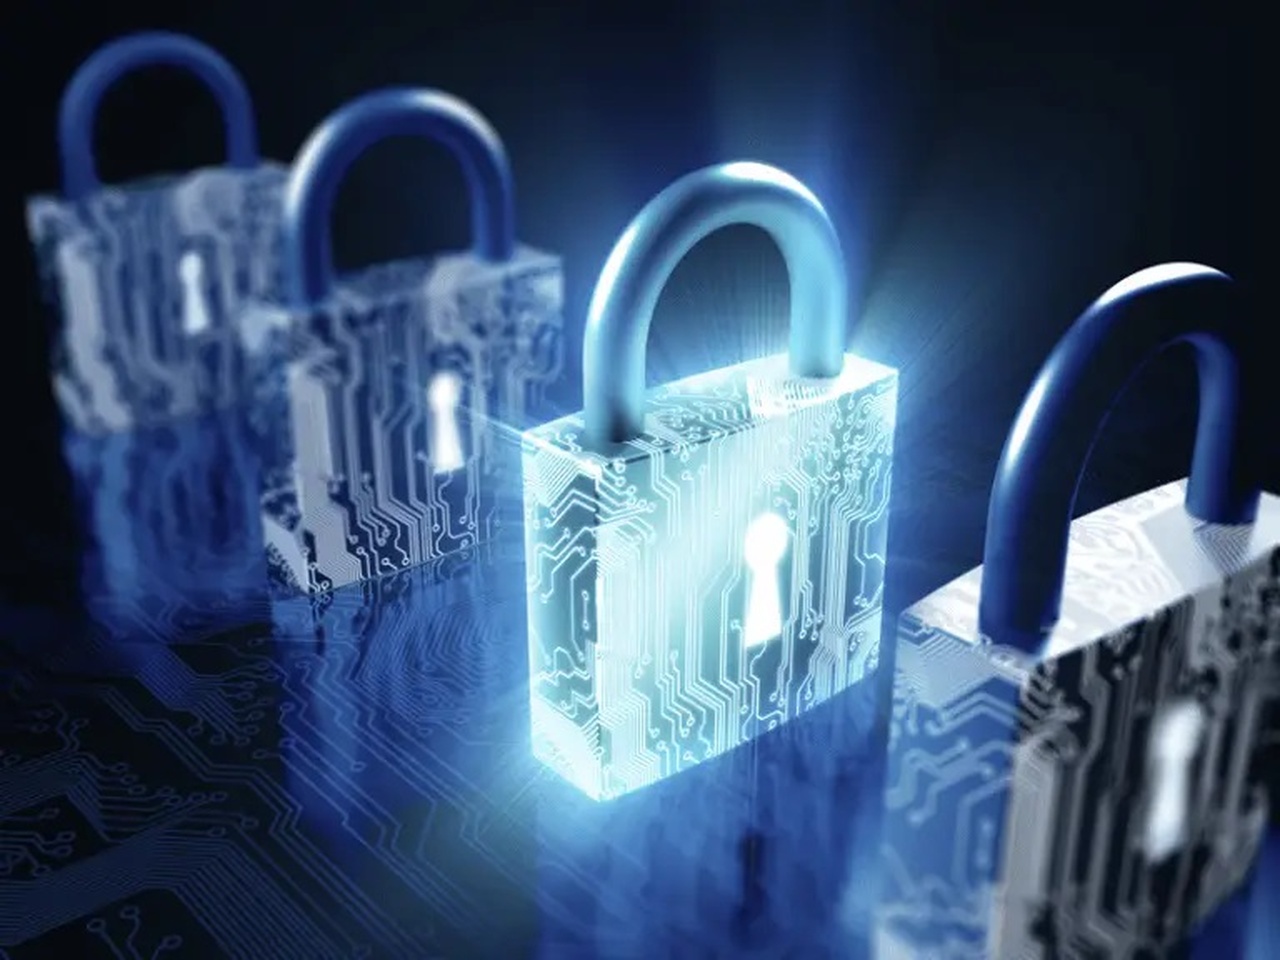 Integridade de dados é essencial para reputação de empresas - Revista Security